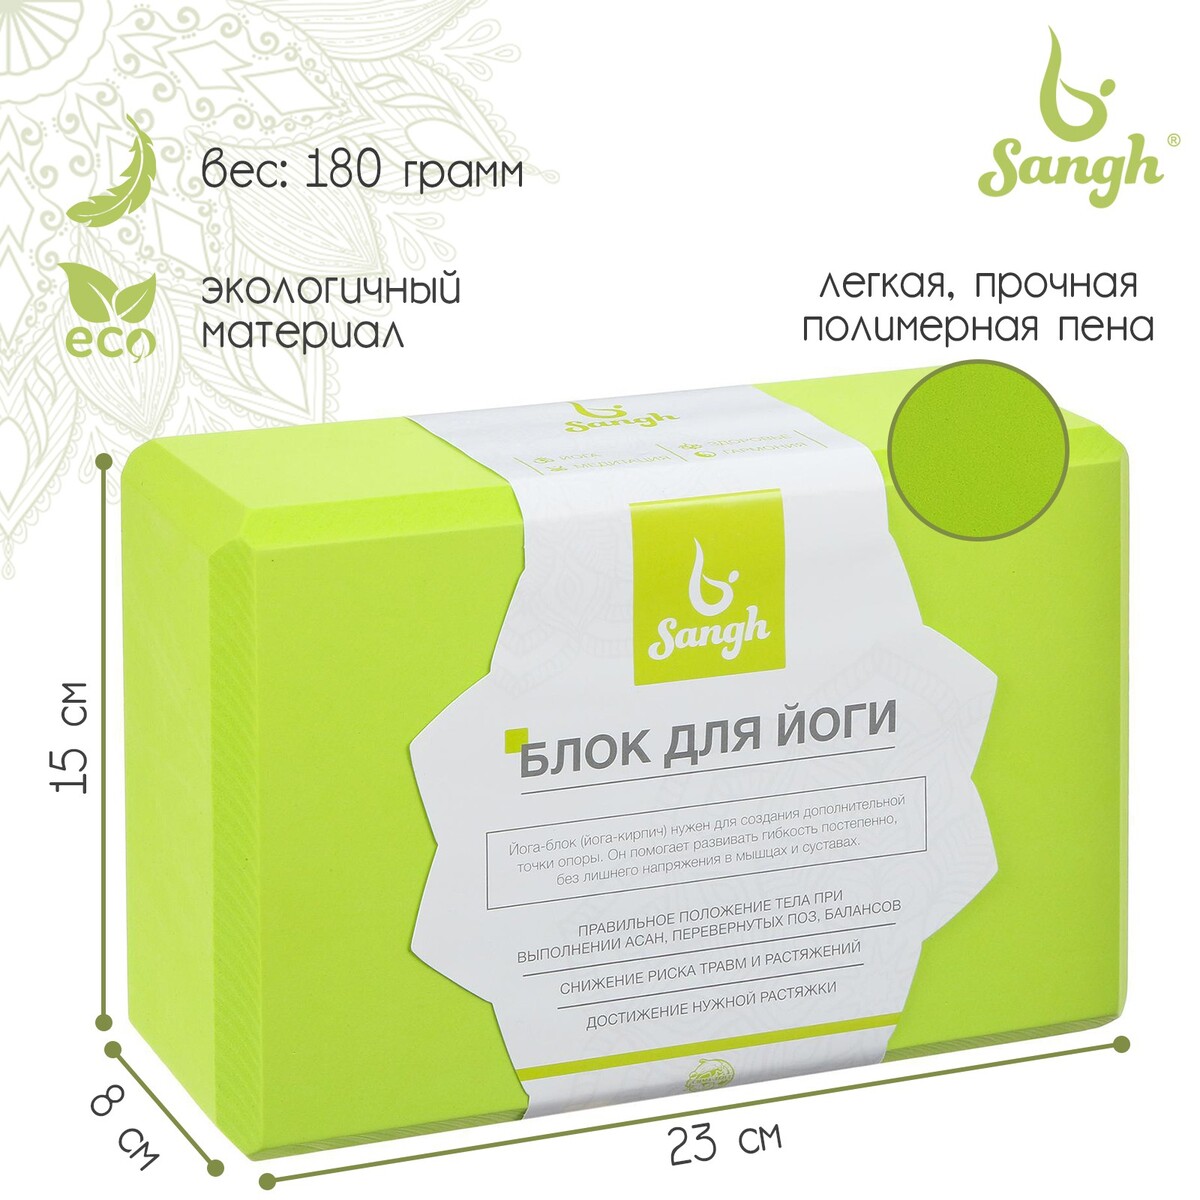 Блок для йоги sangh, 23х15х8 см, цвет зеленый блок для йоги 7 5х15 23 см t2022 ht041